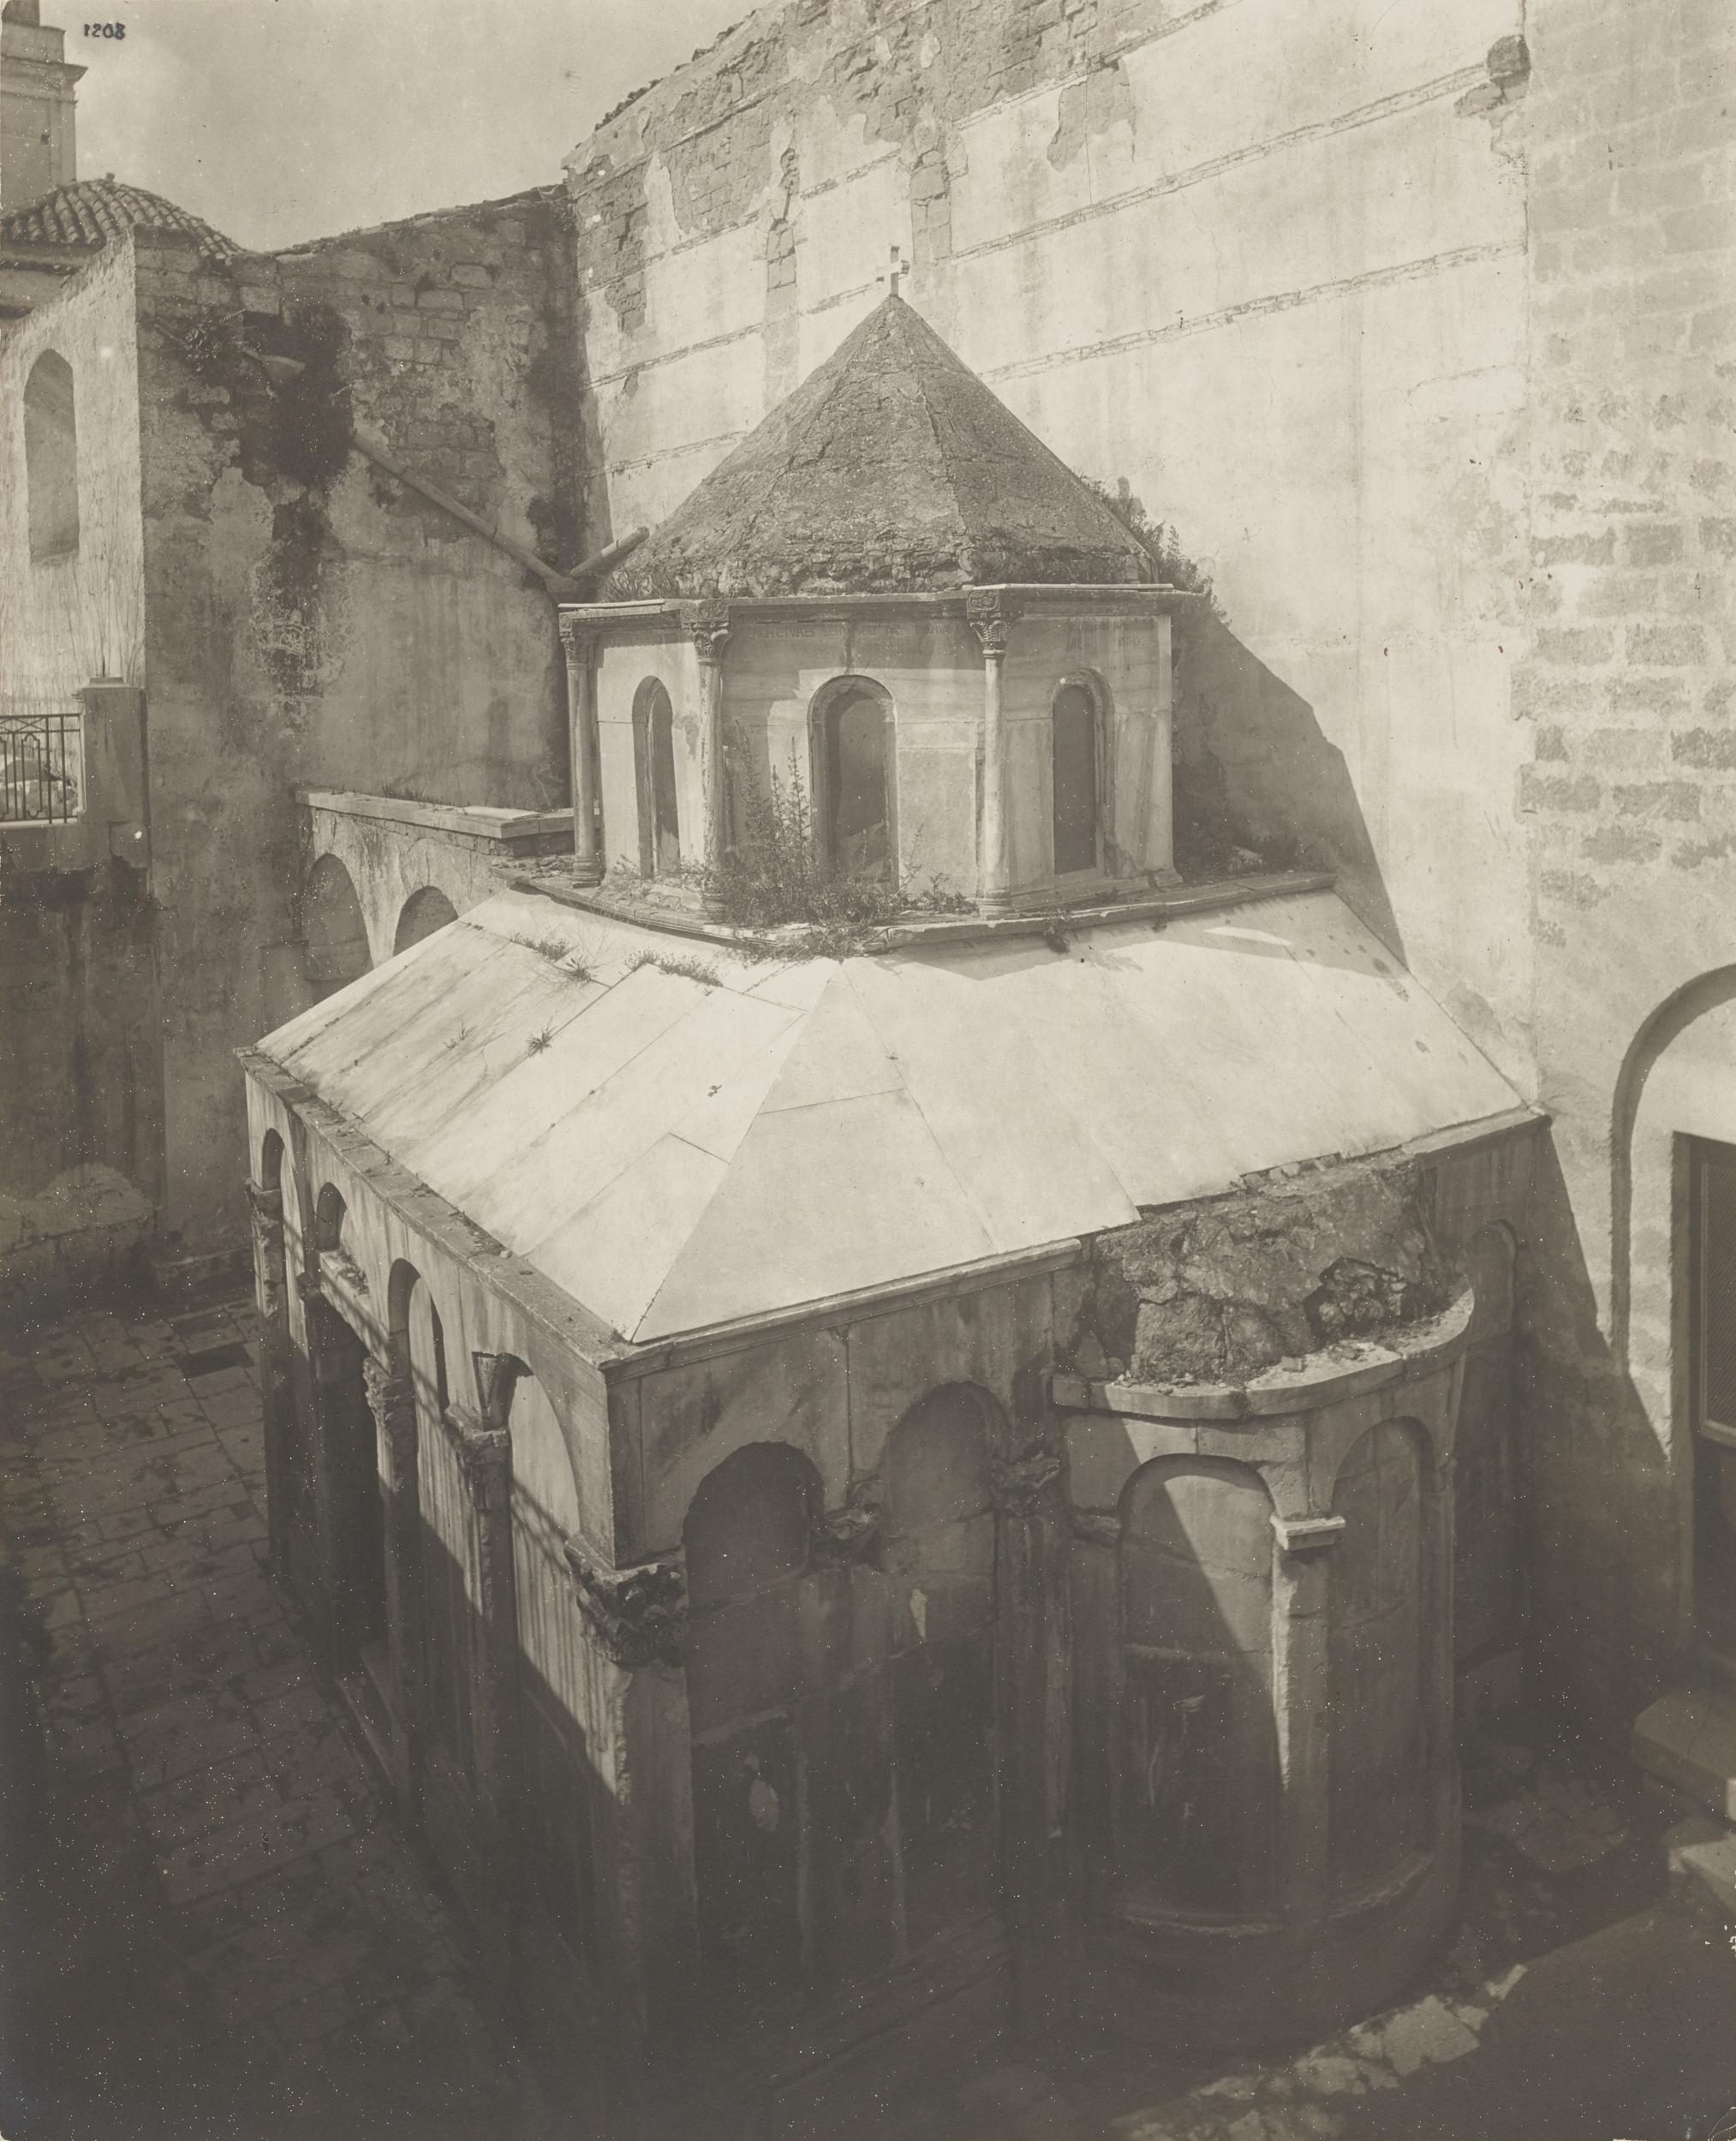 Fotografo non identificato, Canosa di Puglia - Cattedrale San Sabino, esterno, tomba di Boemondo, 1926-1950, gelatina ai sali d'argento/carta, MPI309699